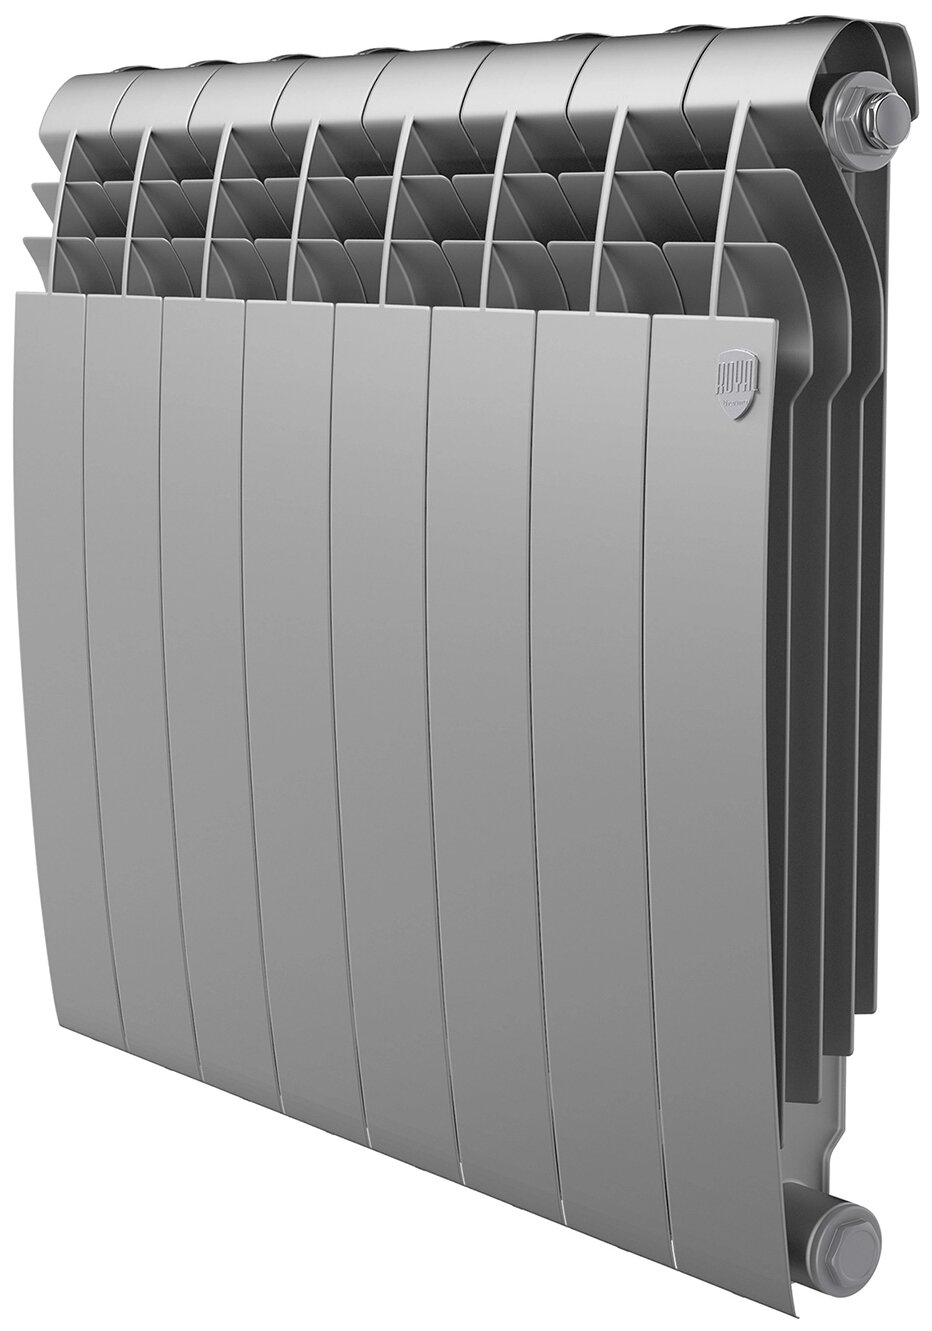 Радиатор секционный Royal Thermo BiLiner 500, кол-во секций: 8, 8.32 м2, 832 Вт, 640 мм.